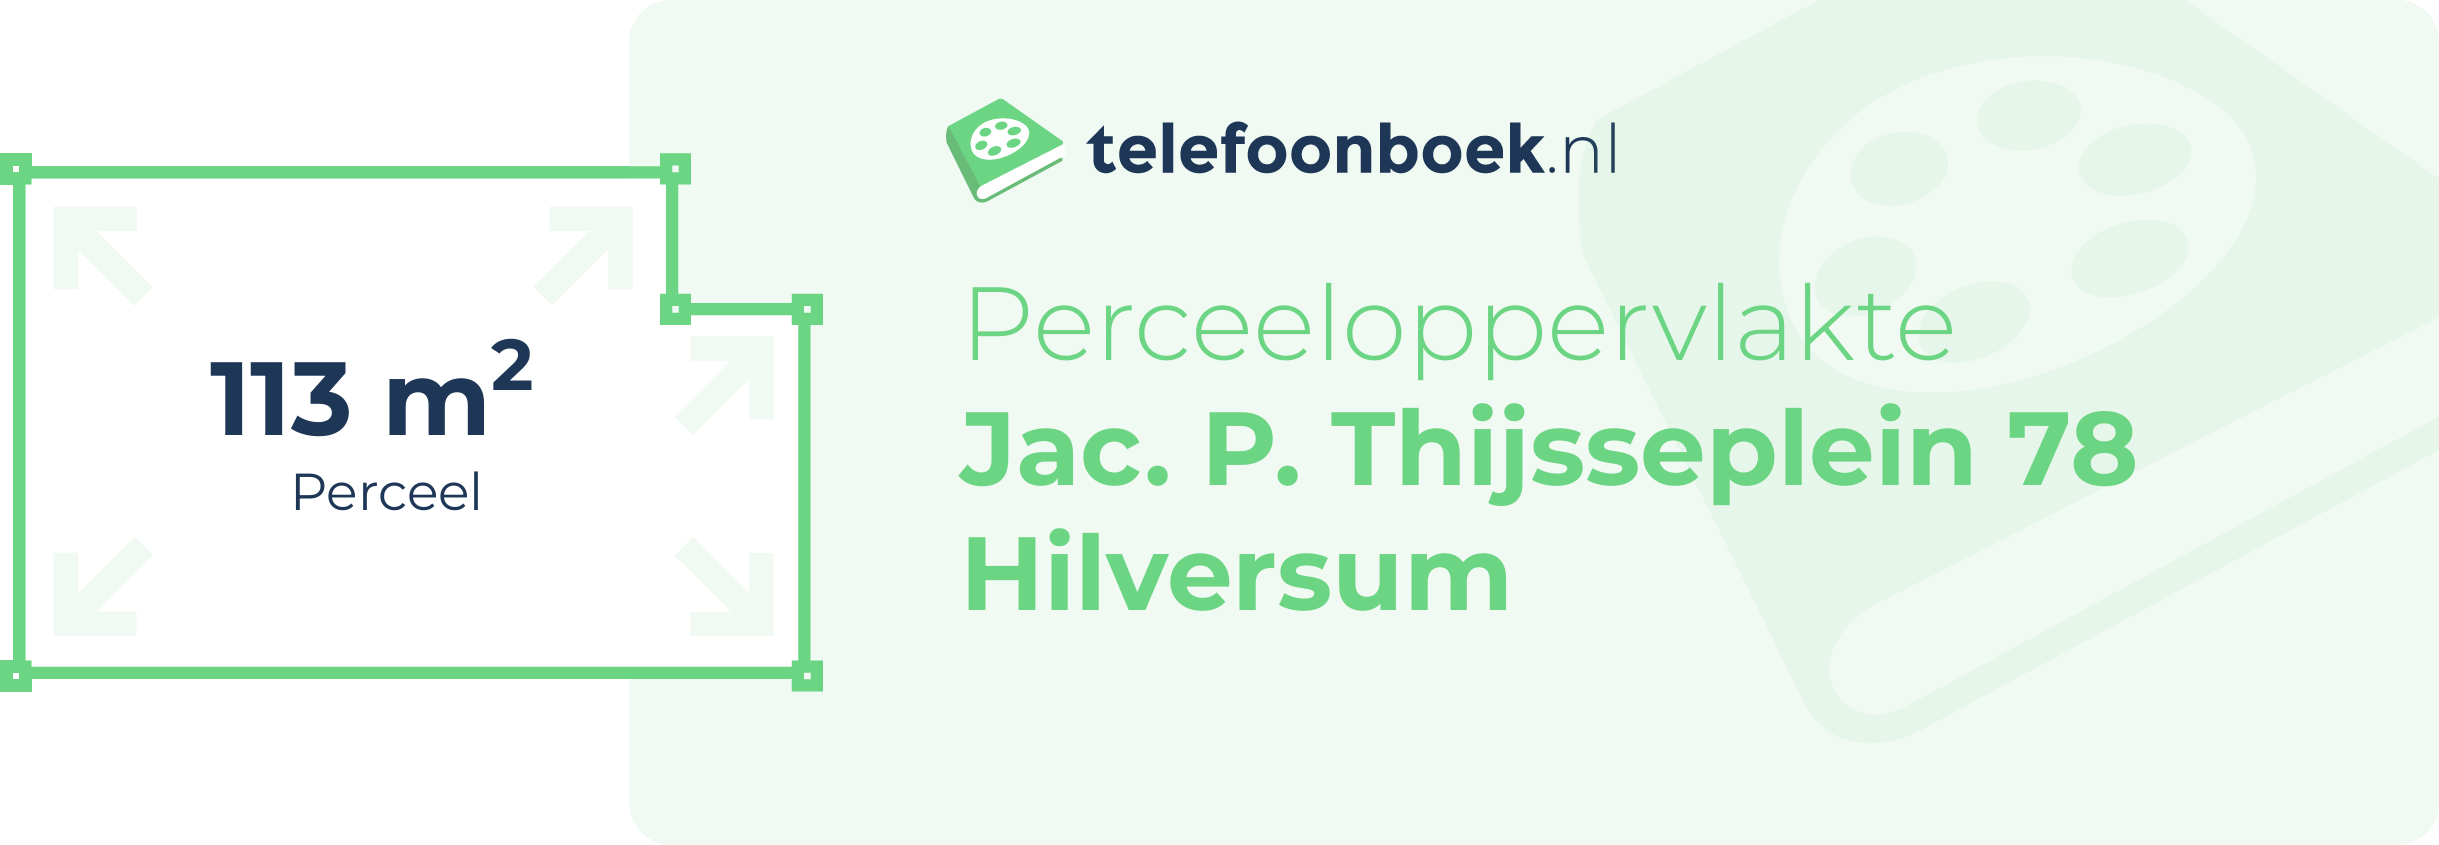 Perceeloppervlakte Jac. P. Thijsseplein 78 Hilversum